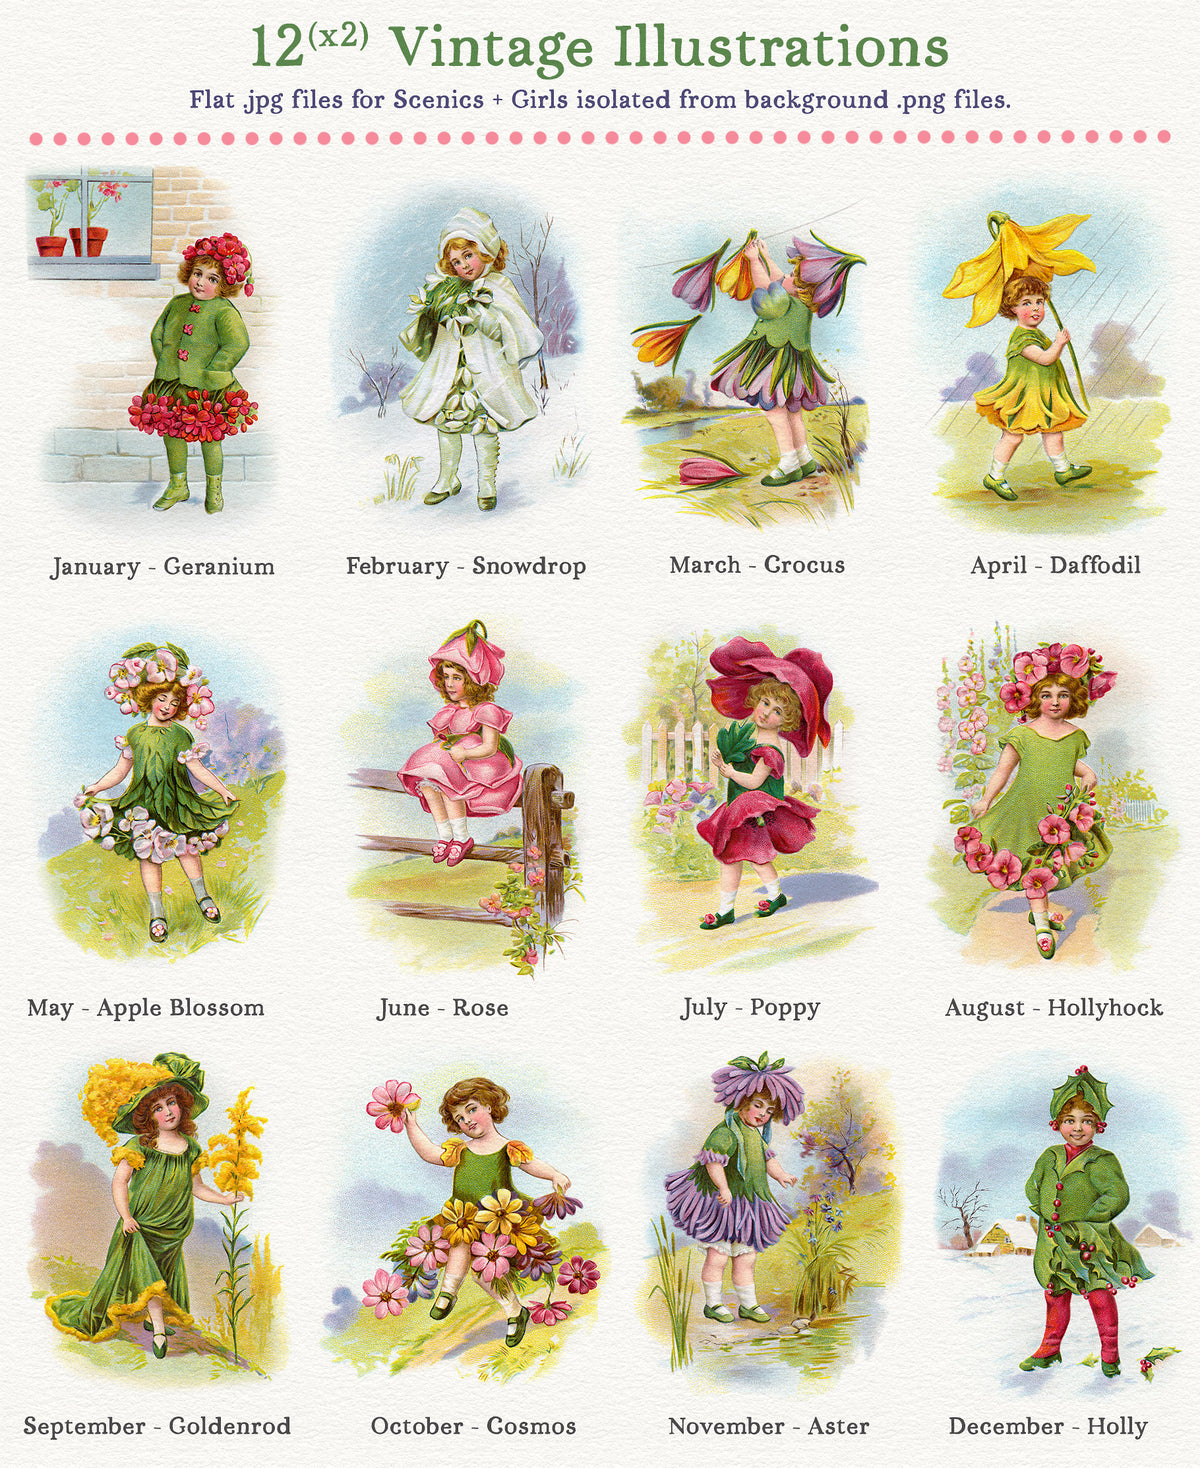 Vintage Fantasy Flower Girls Illustration digital graphics.